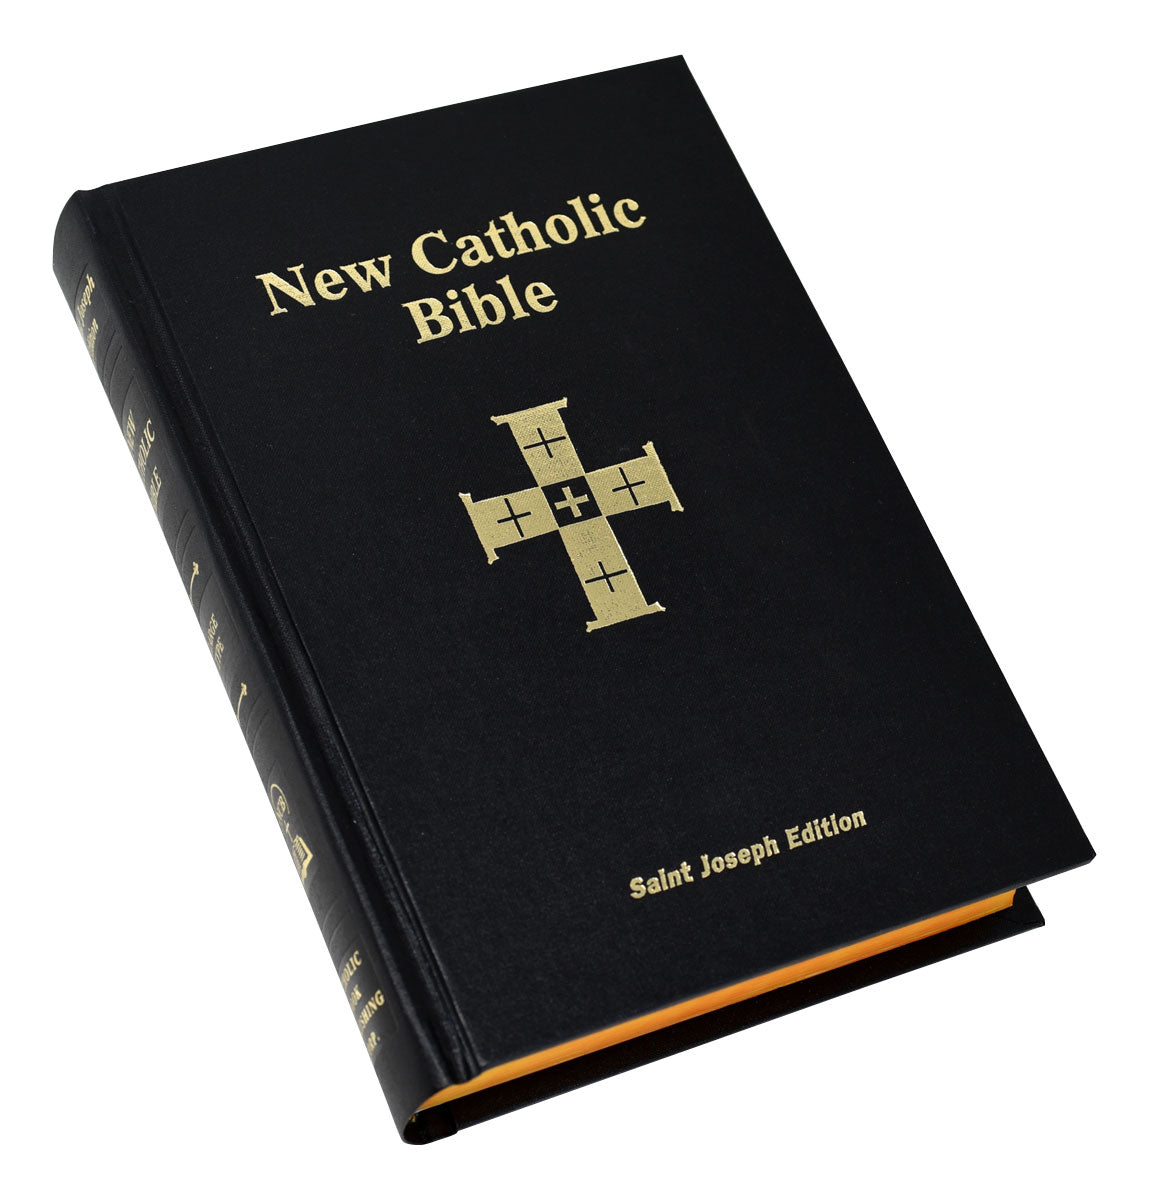 New Catholic Bible Large Print